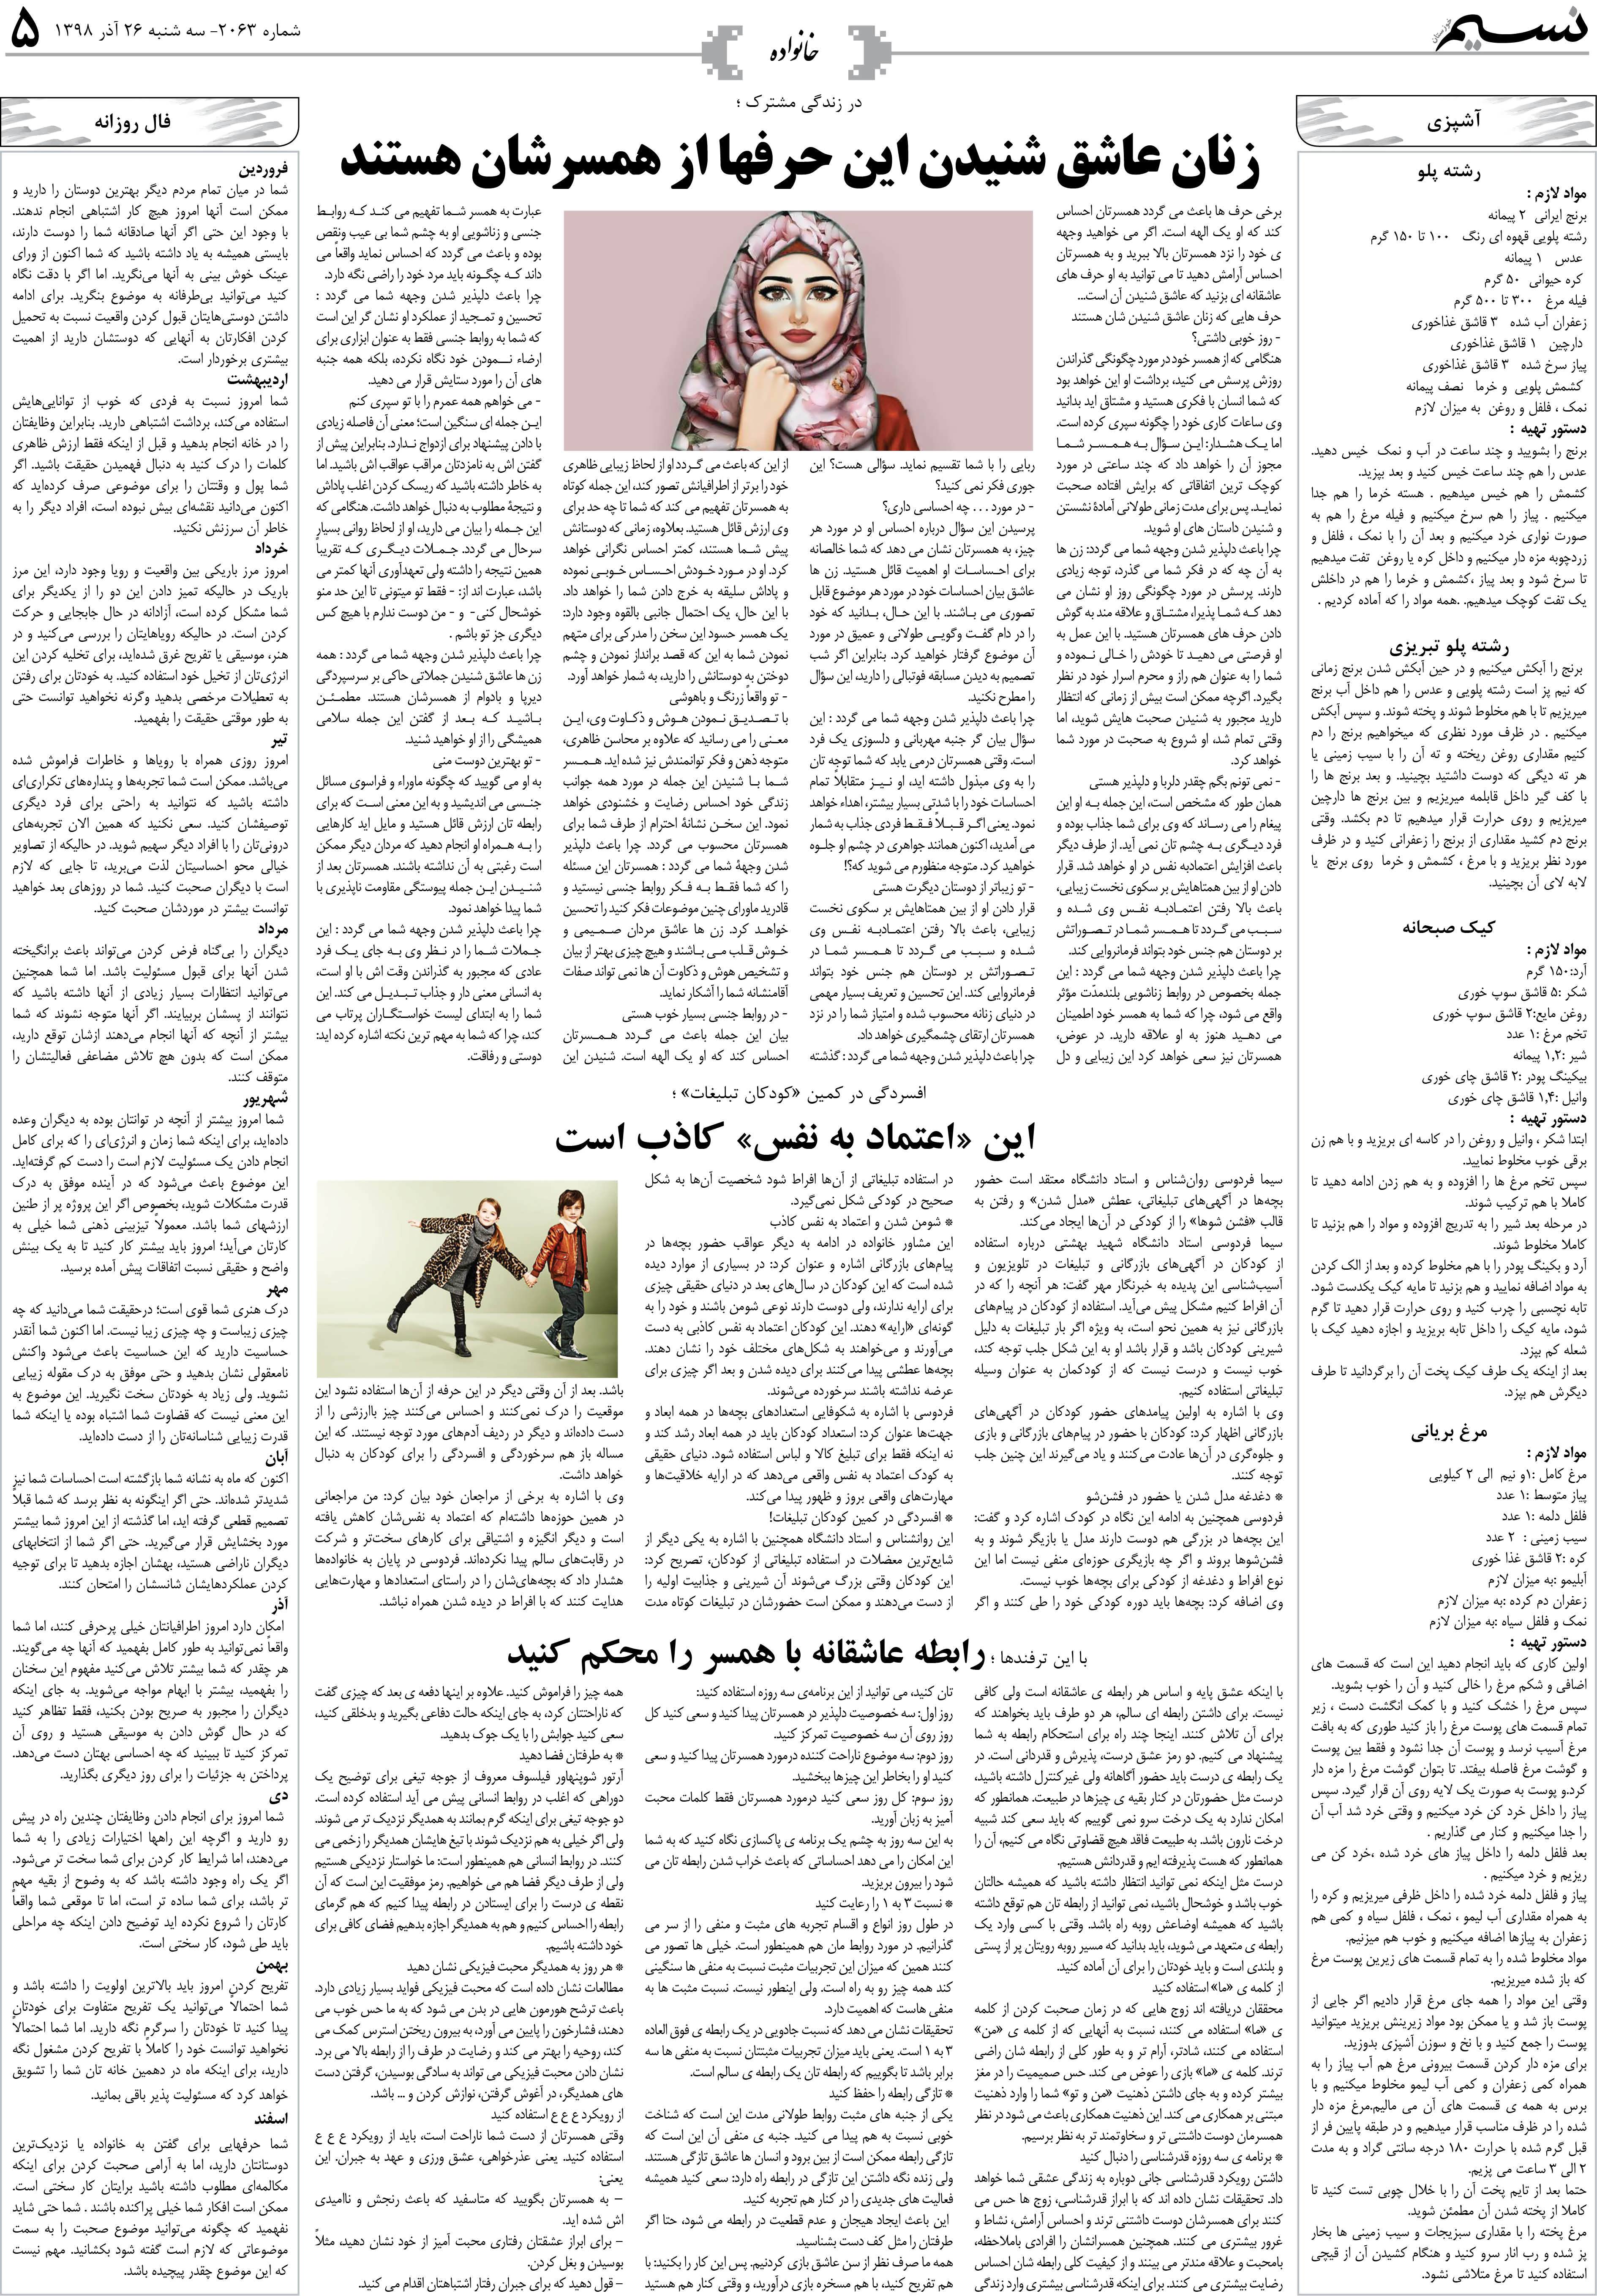 صفحه خانواده روزنامه نسیم شماره 2063